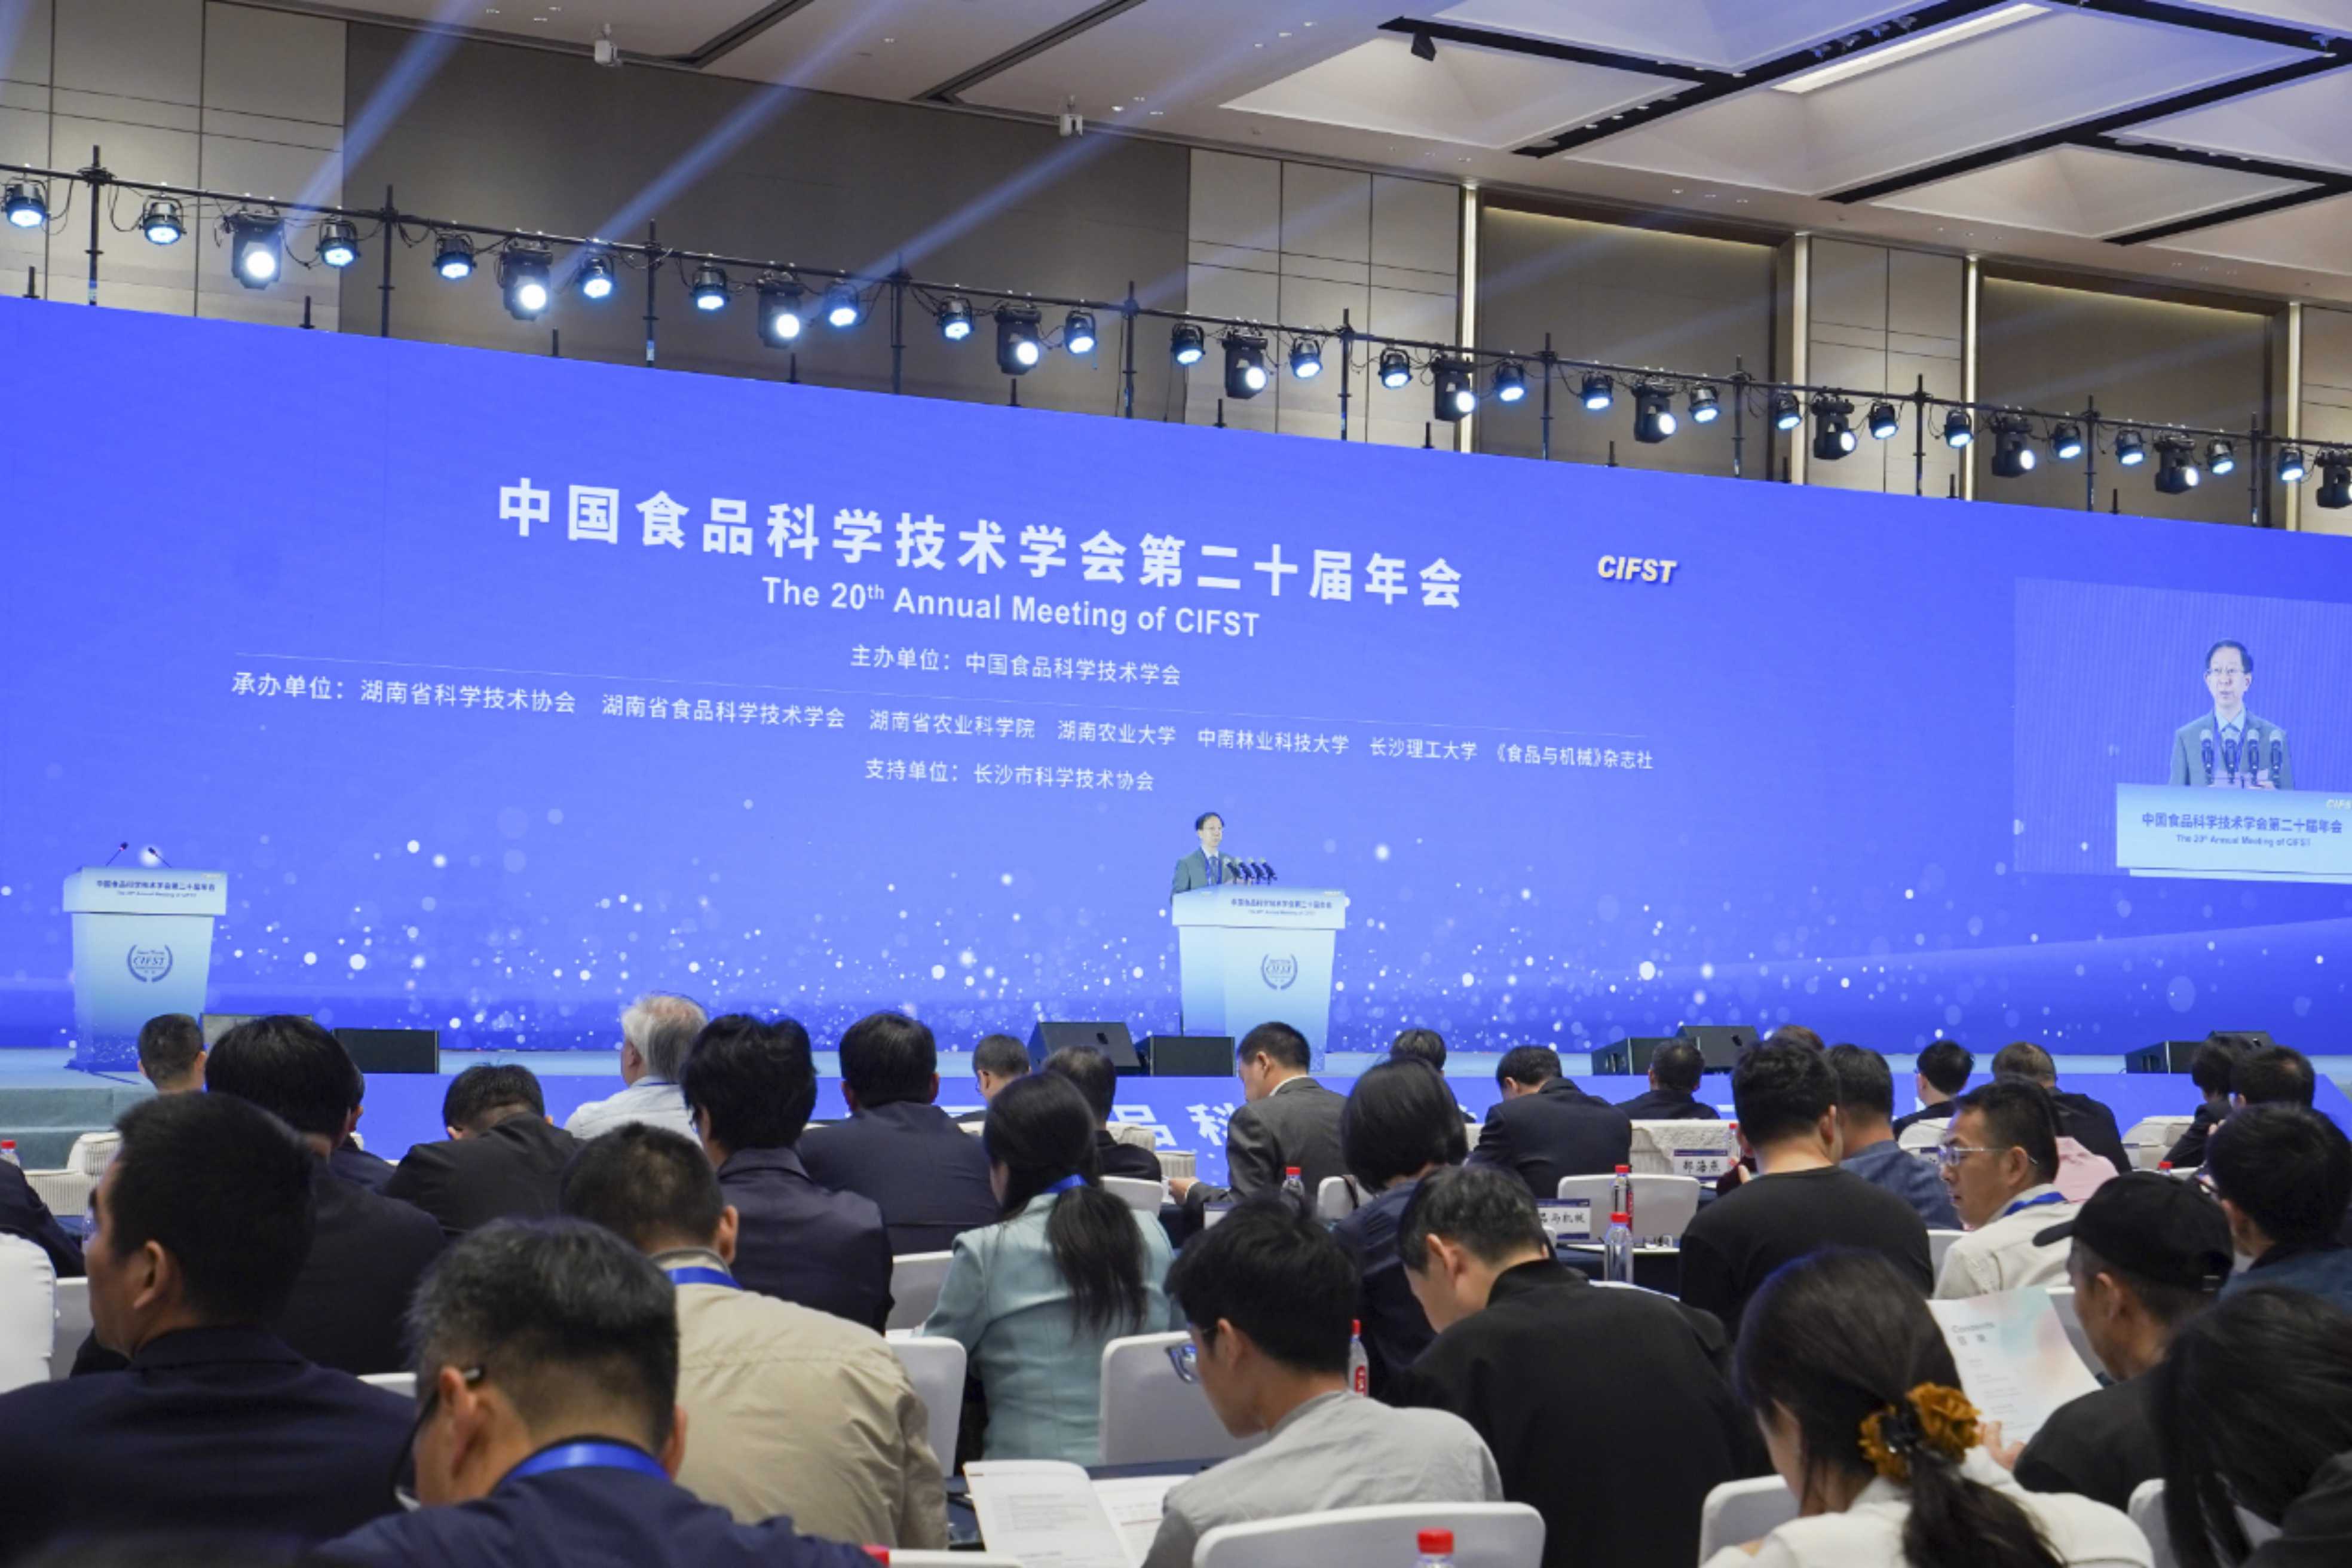 聚焦前沿科技创新 中国食品科学技术学会第20届年会在长沙召开